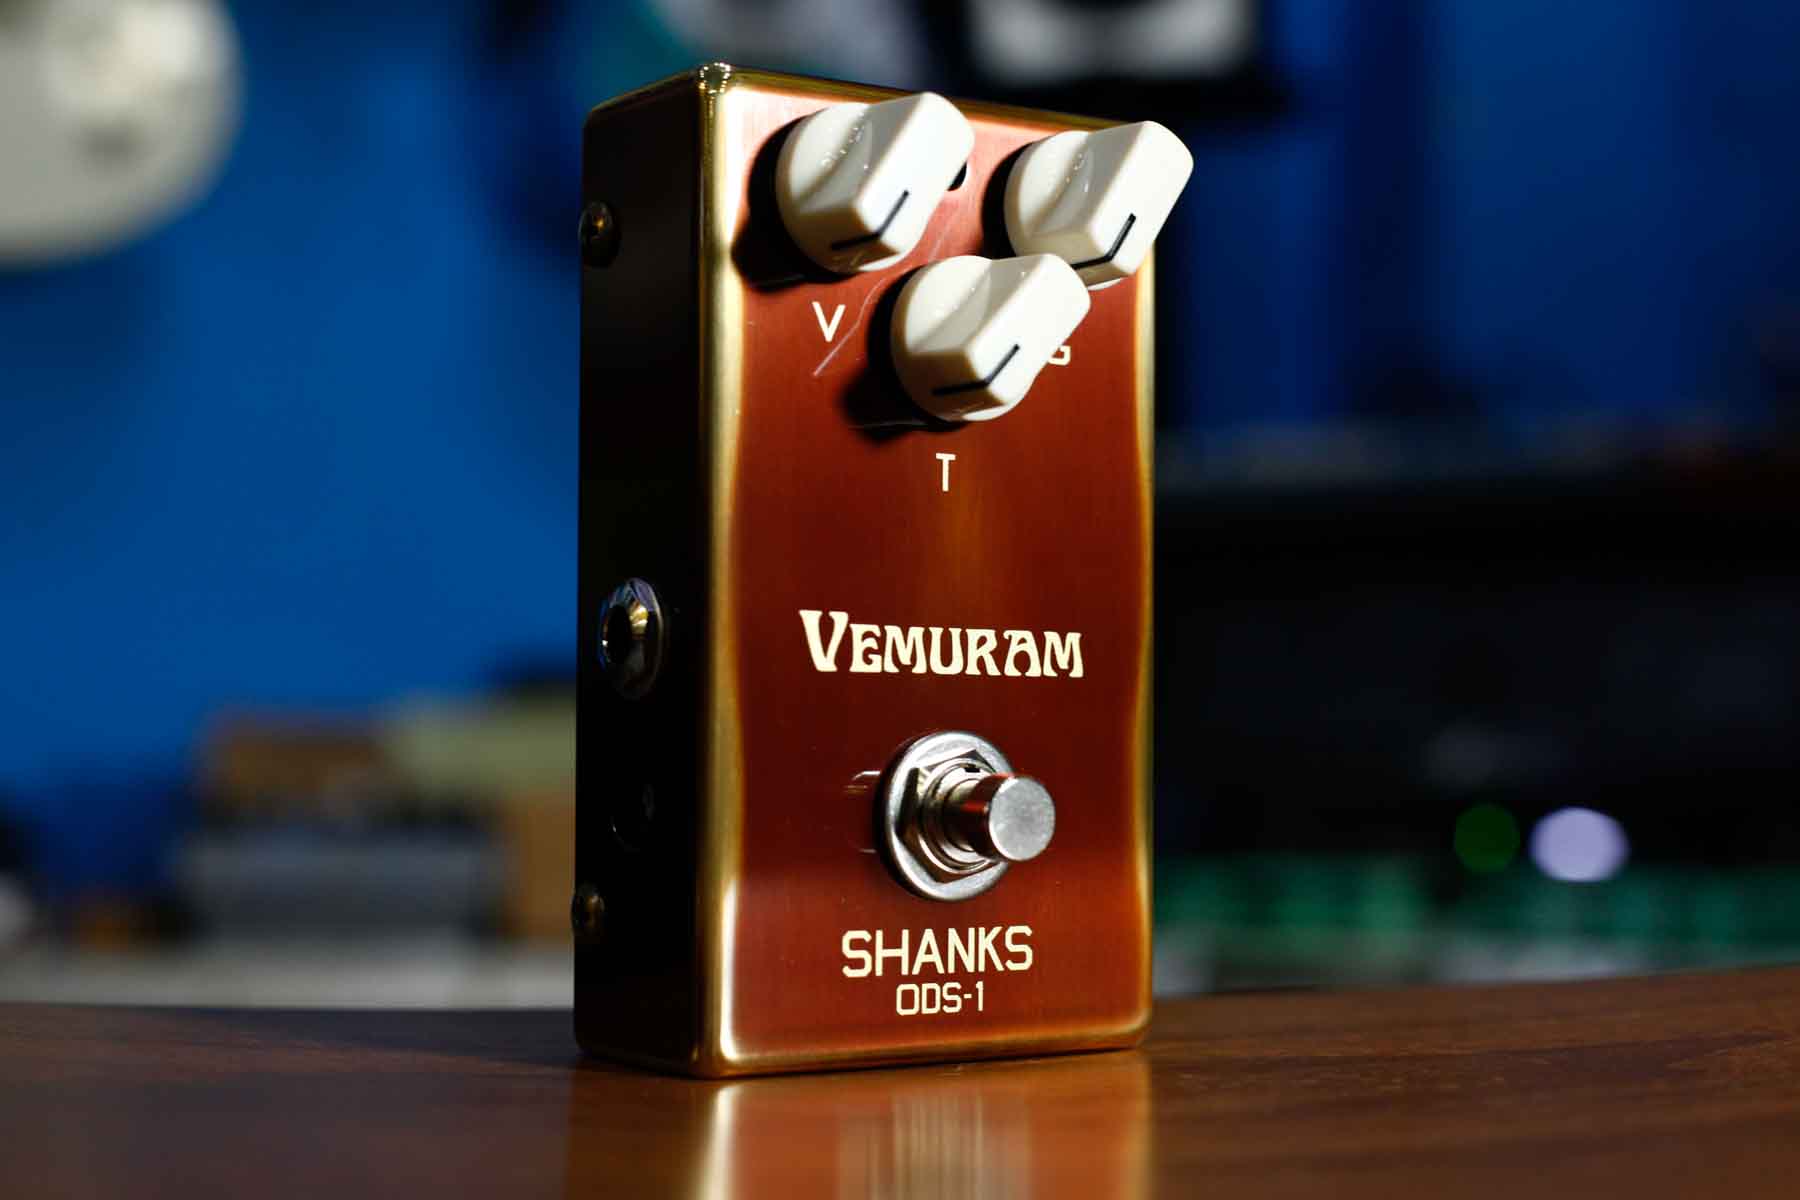 Vemuram SHANKS ODS-1